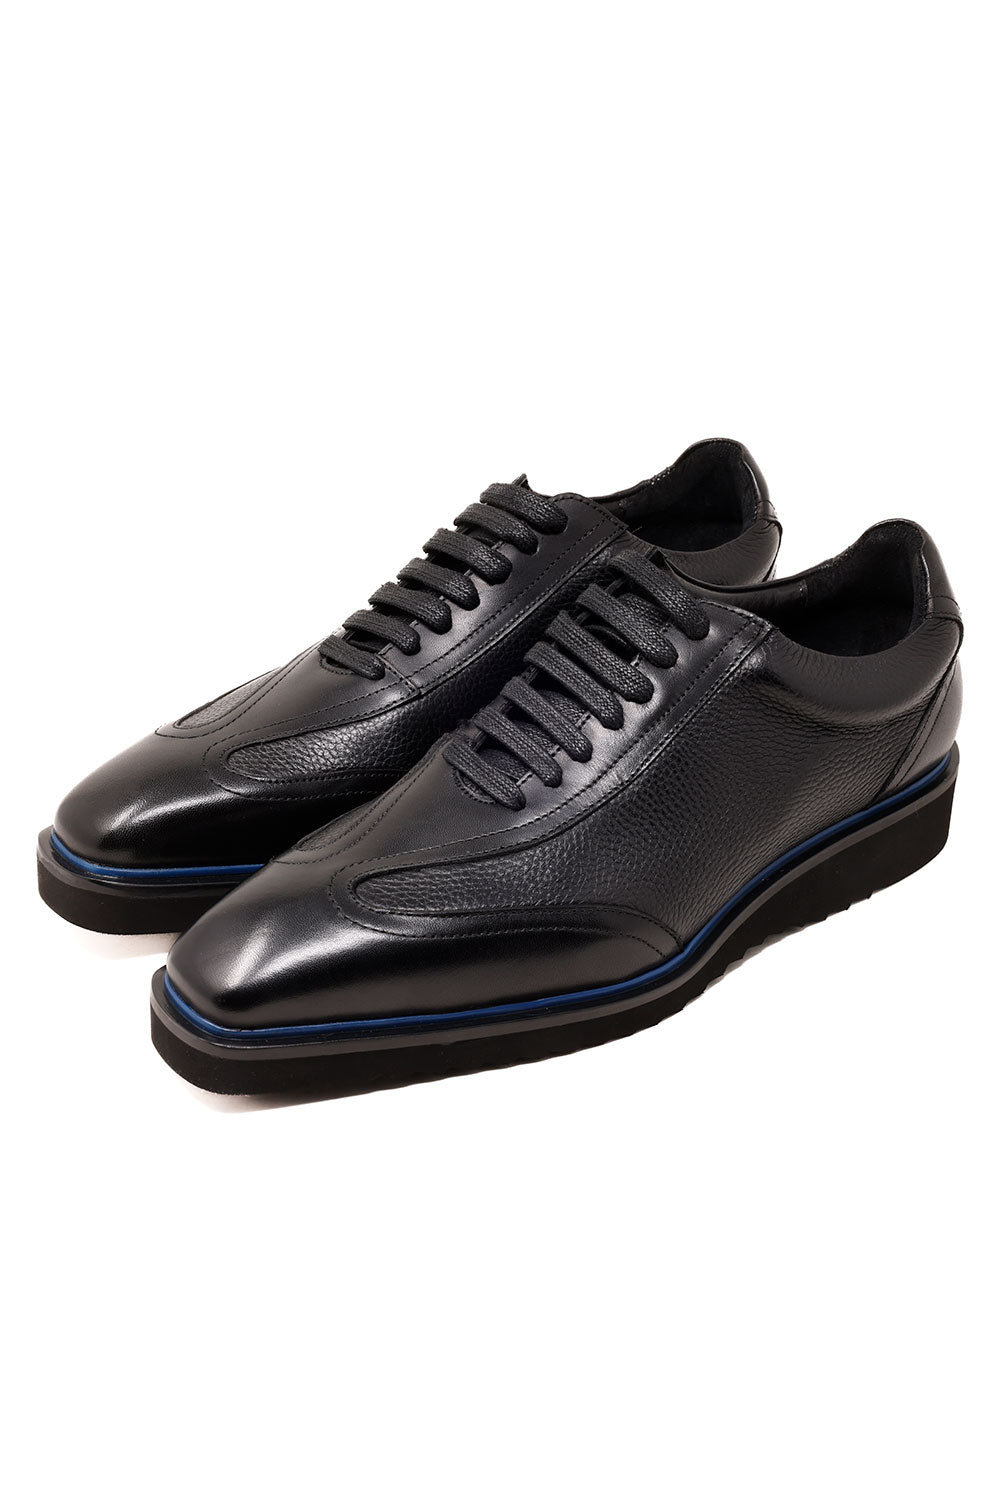 Barabas Men's Wingtip Oxford Leather Loafer Lace up Shoes 3SH38 Black